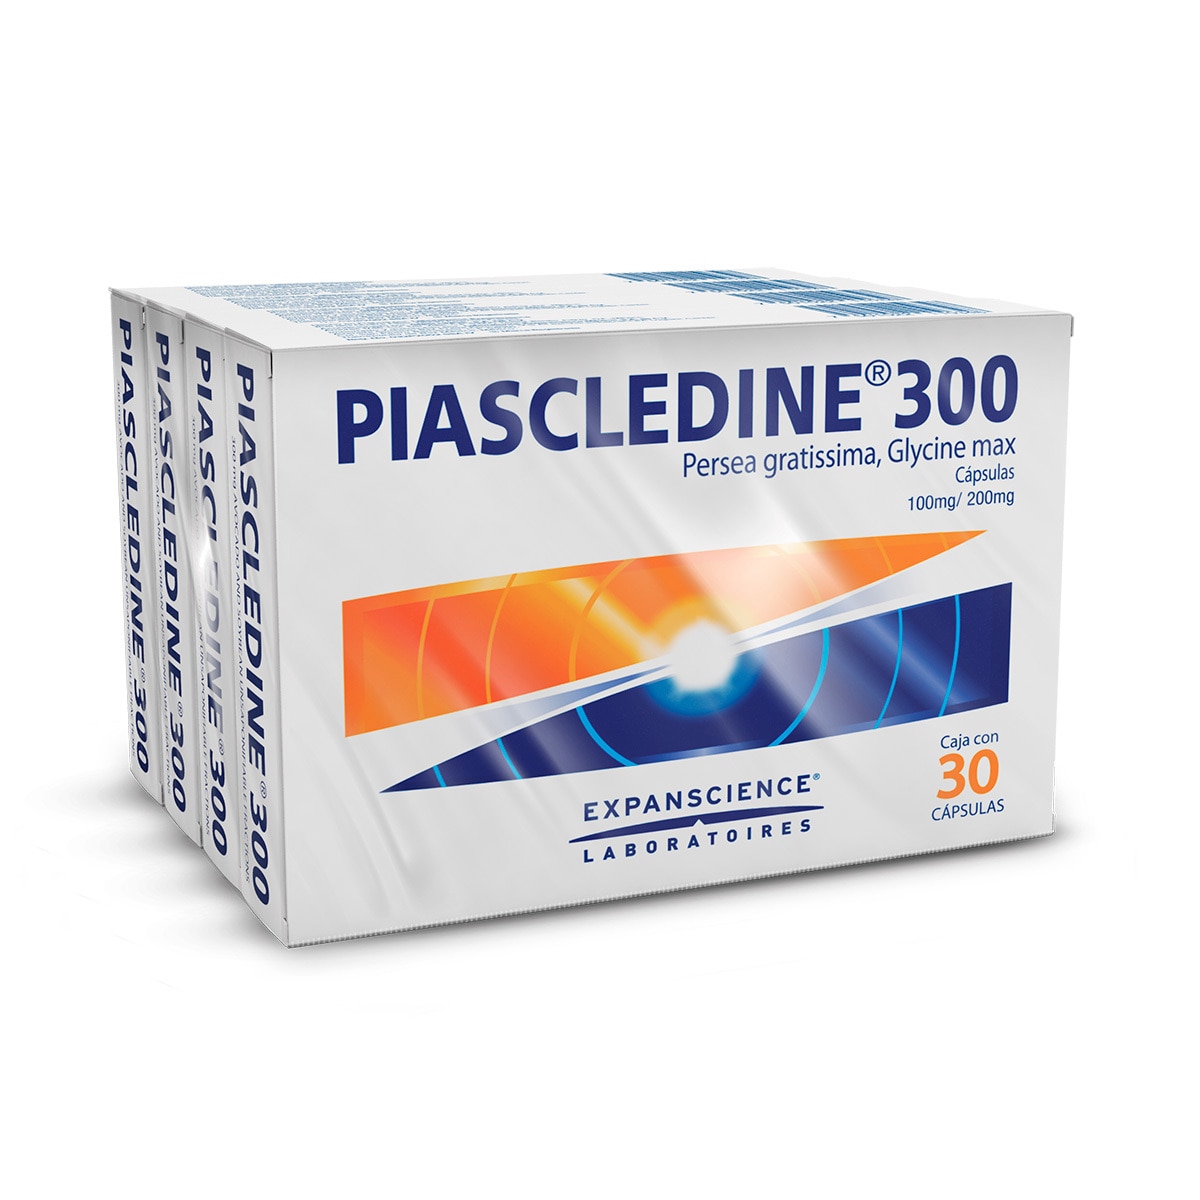 Piascledine 300, 30 Cápsulas/4 cajas 